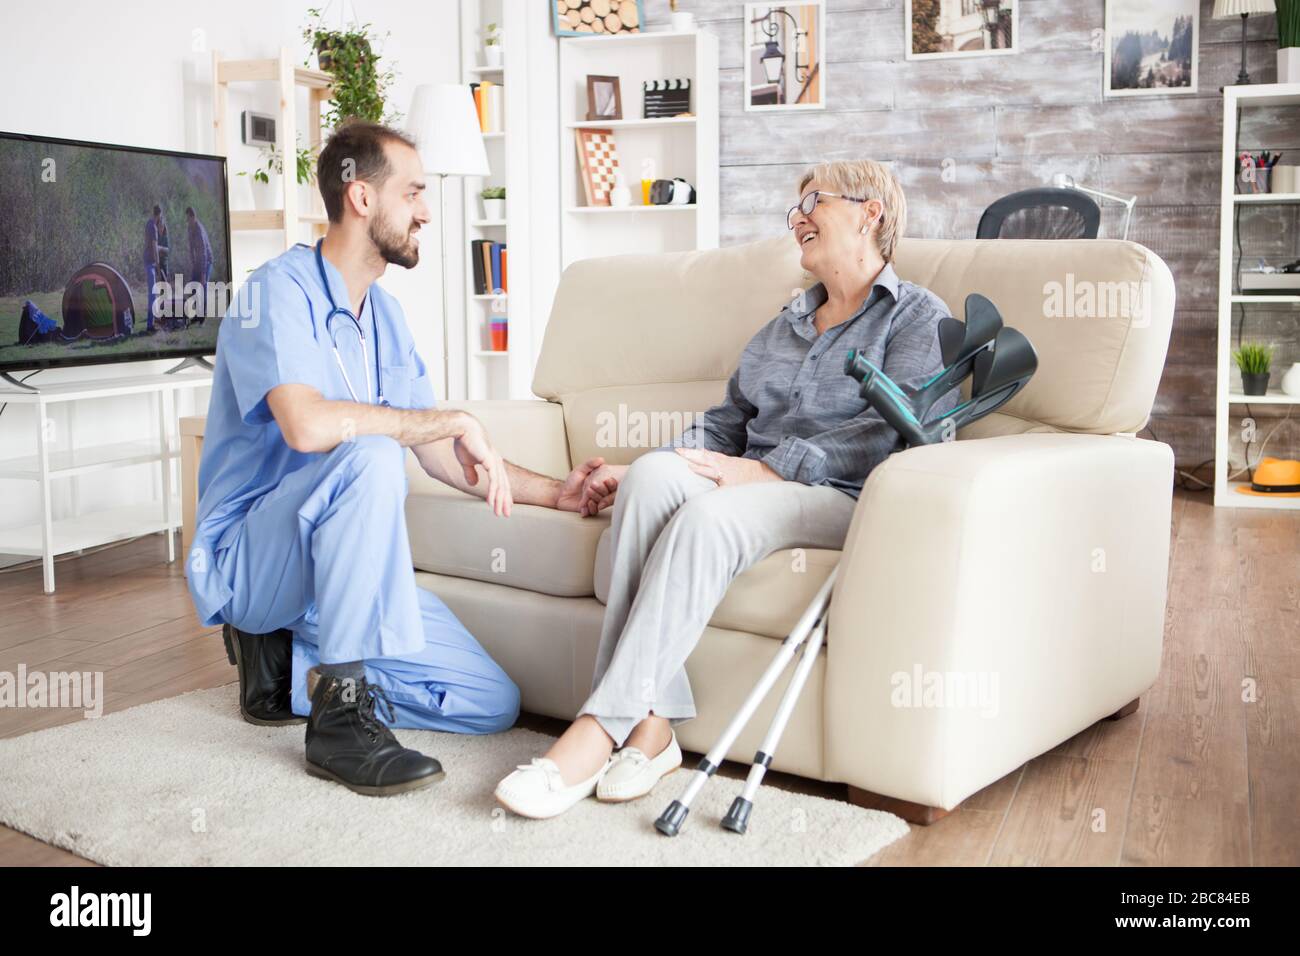 Freudige alte Frau in einem Pflegeheim, die mit ihrem Gesundheitsbesucher spricht, während sie mit Krücken neben ihr auf der Couch sitzt. Stockfoto